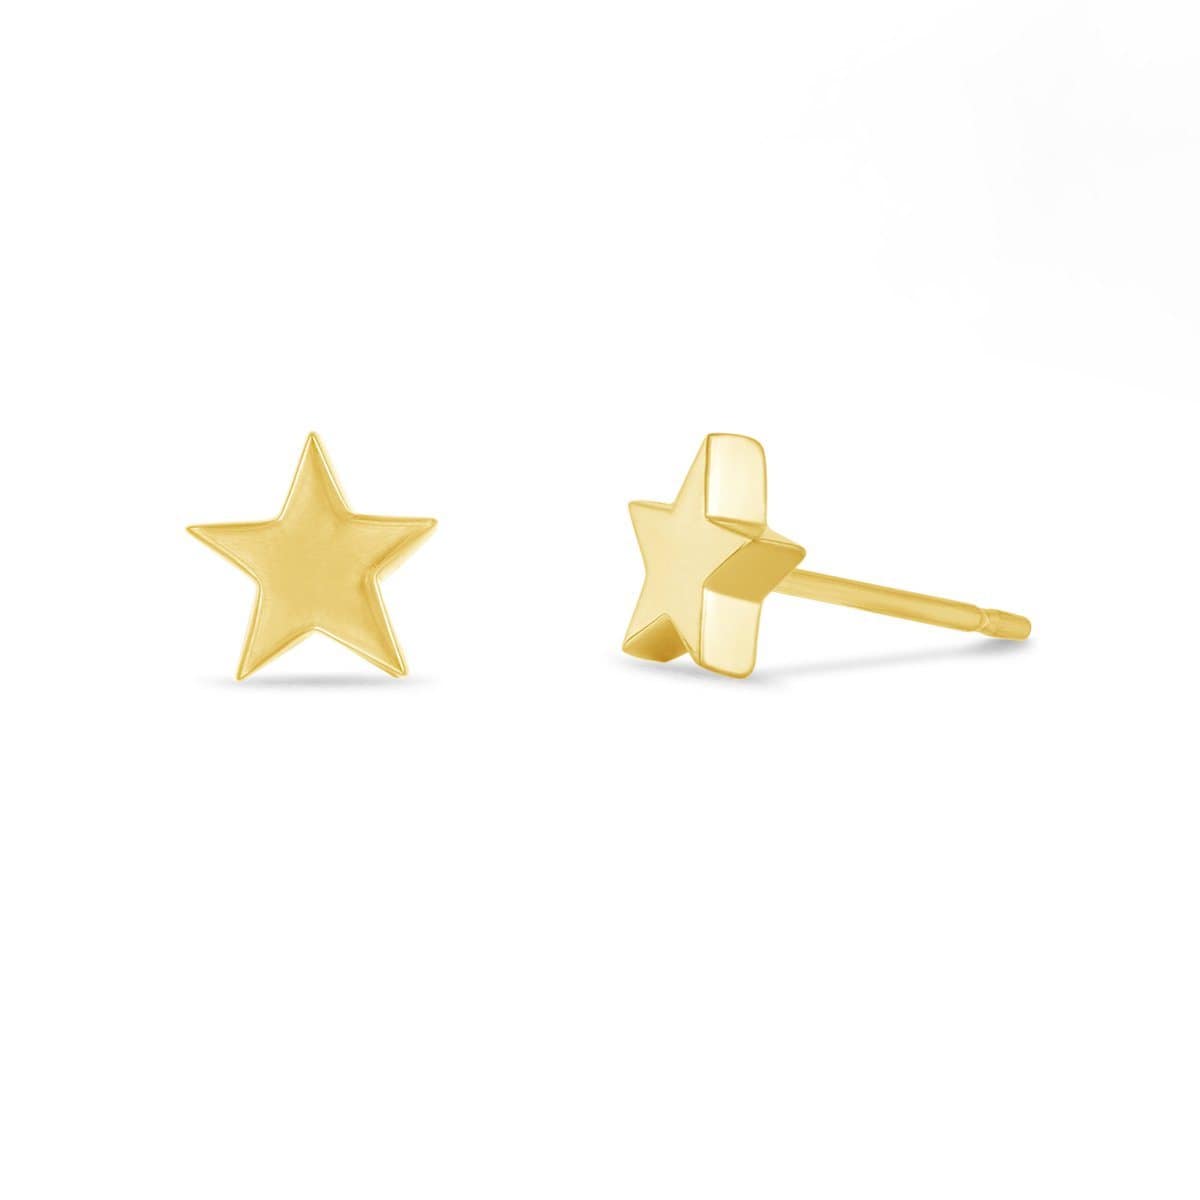 Boma Jewelry Earrings 14K Gold Vermeil Belle Star Studs